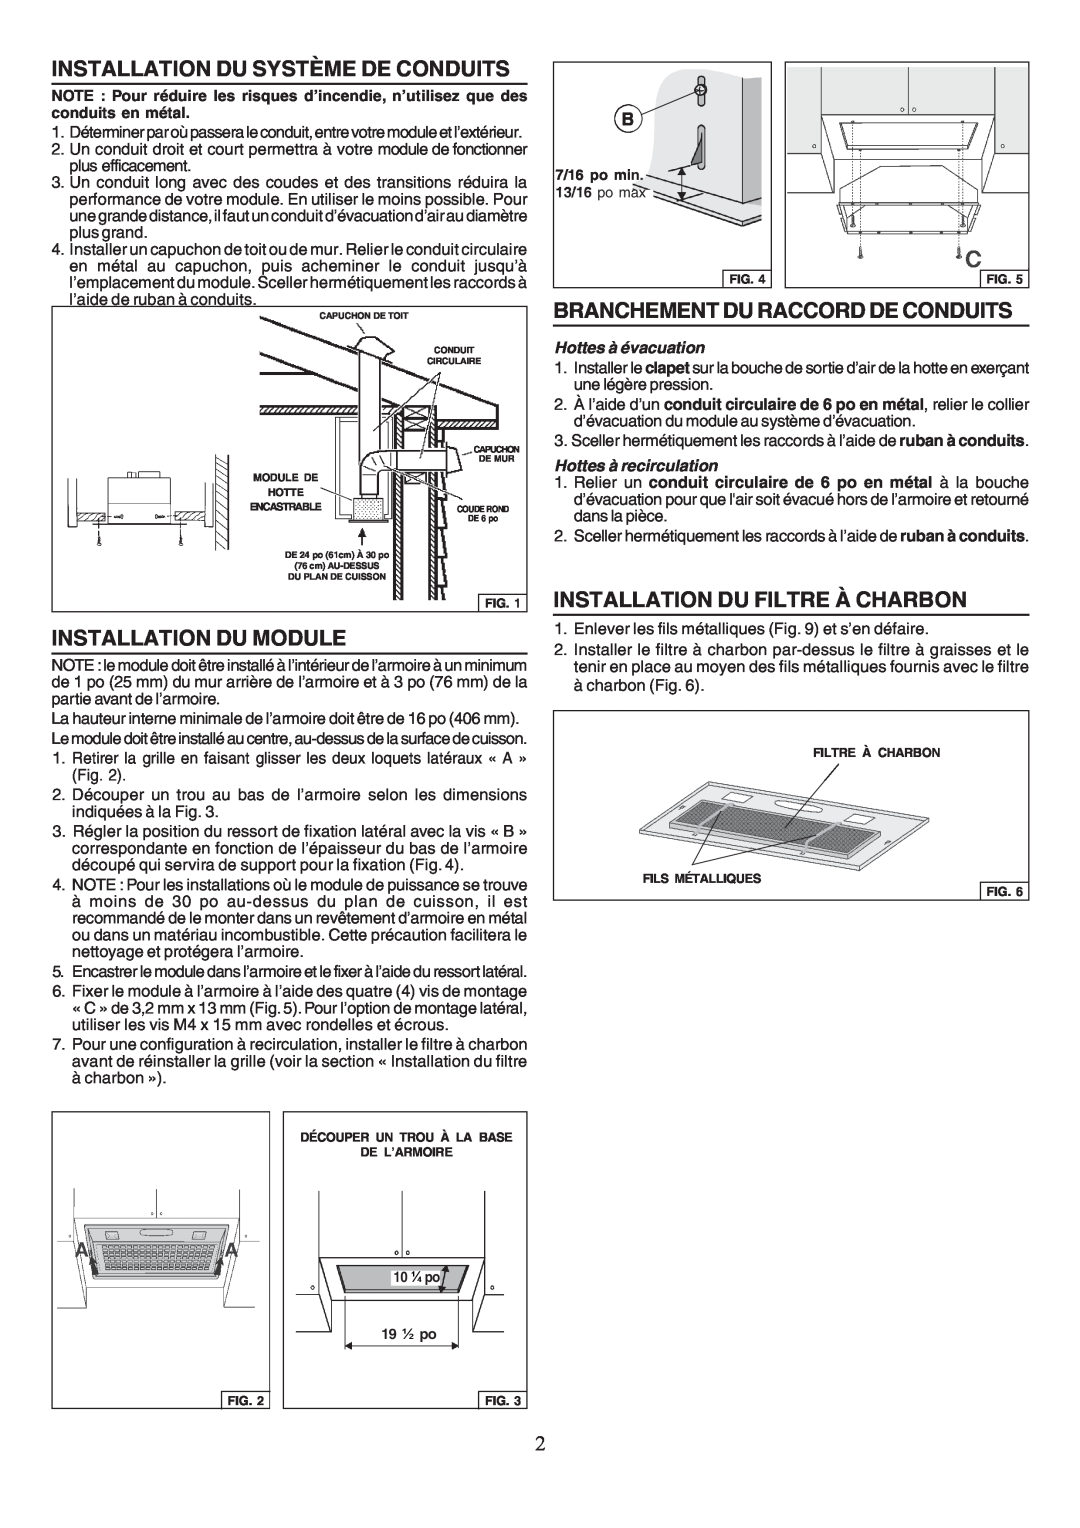 Broan PM390HS warranty Installation Du Système De Conduits, Installation Du Module, Branchement Du Raccord De Conduits 